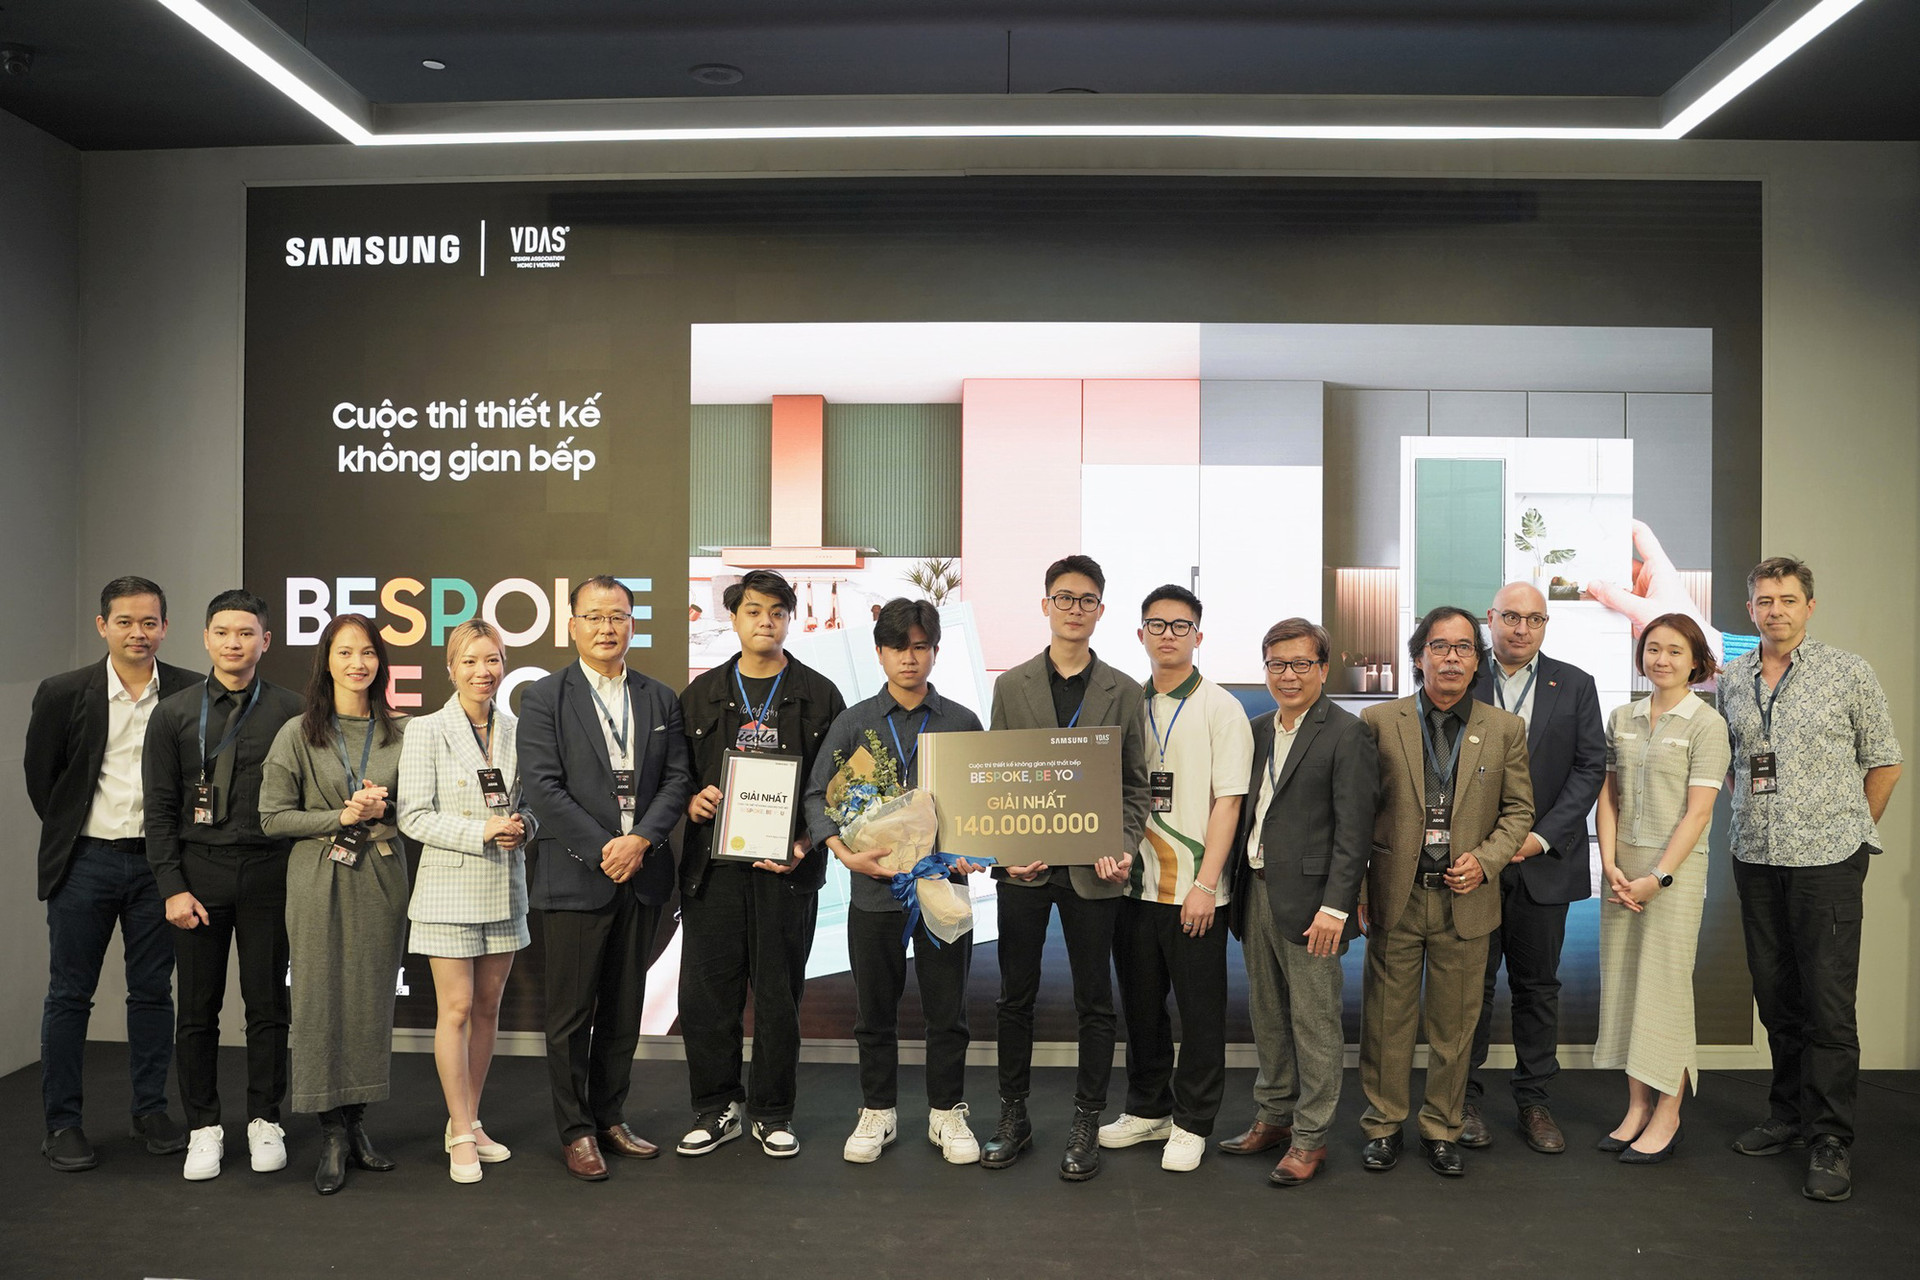 Samsung vinh danh người thắng trong cuộc thi “Bespoke, Be You” - Ảnh 1.